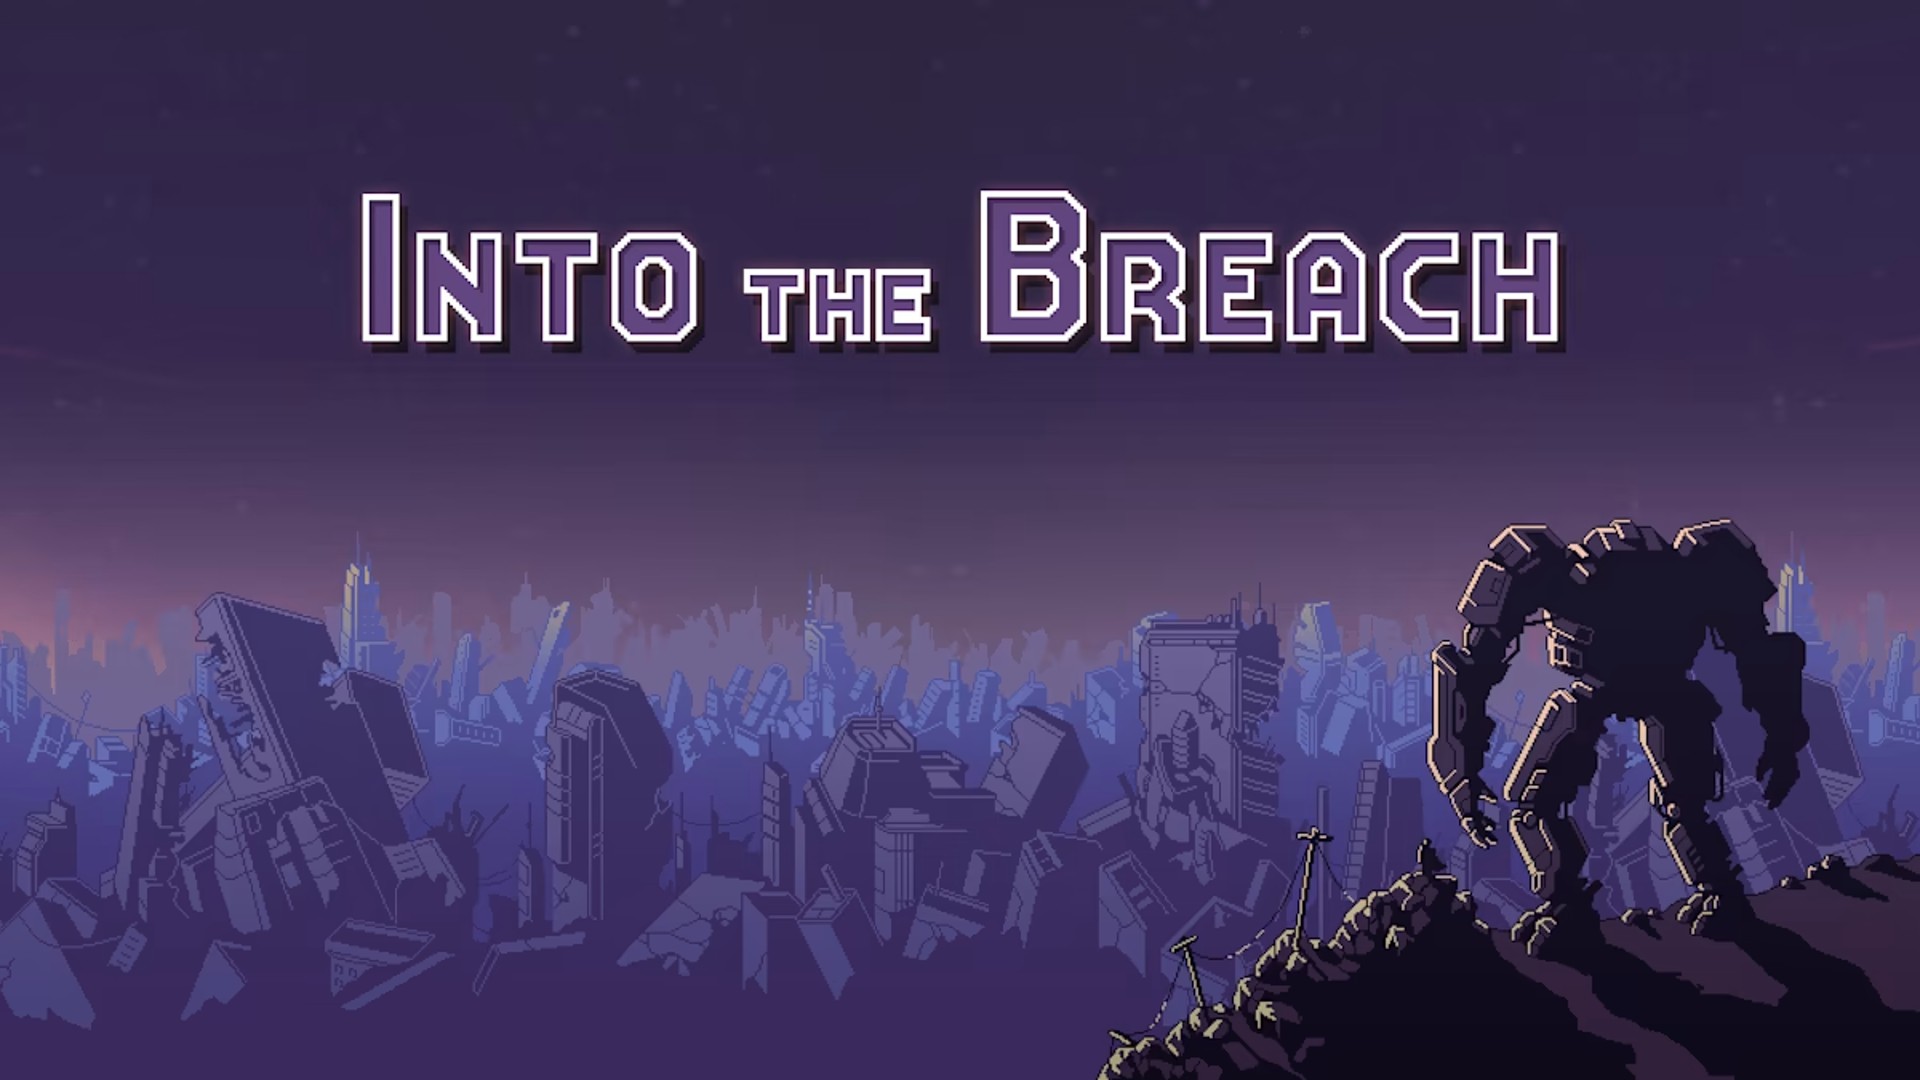 Into the Breach ได้อัปเดตใหม่ในรอบ 4 ปี พร้อมภาษาไทย สมาชิก Netflix เล่นบน iOS, Android ฟรี